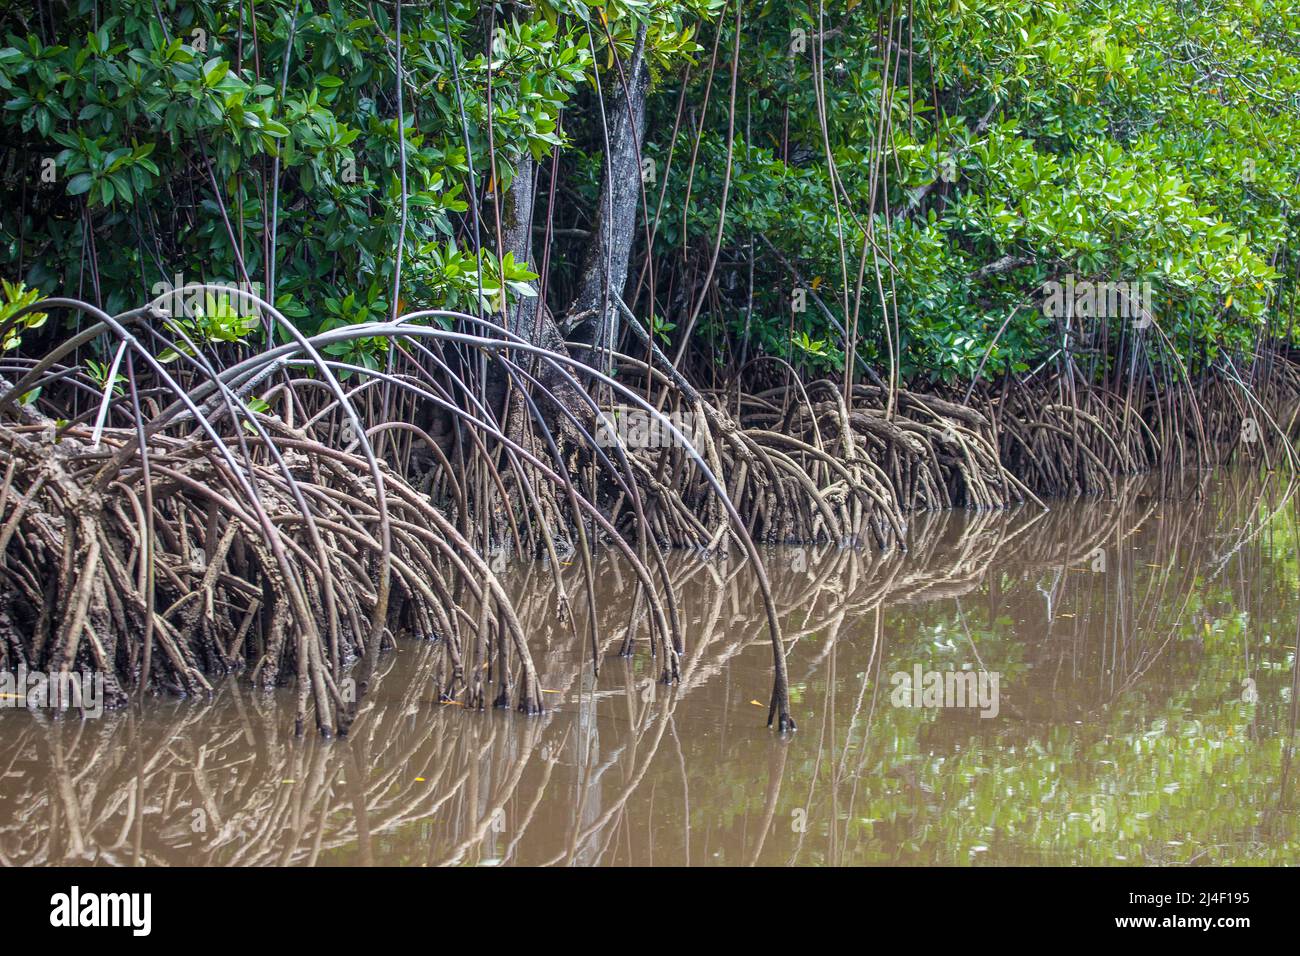 Ein Mangrovenwald, Rhizopora sp. Vor der Insel Yap, Mikronesien. Dies ist ein kritischer Lebensraum für junge Arten. Stockfoto